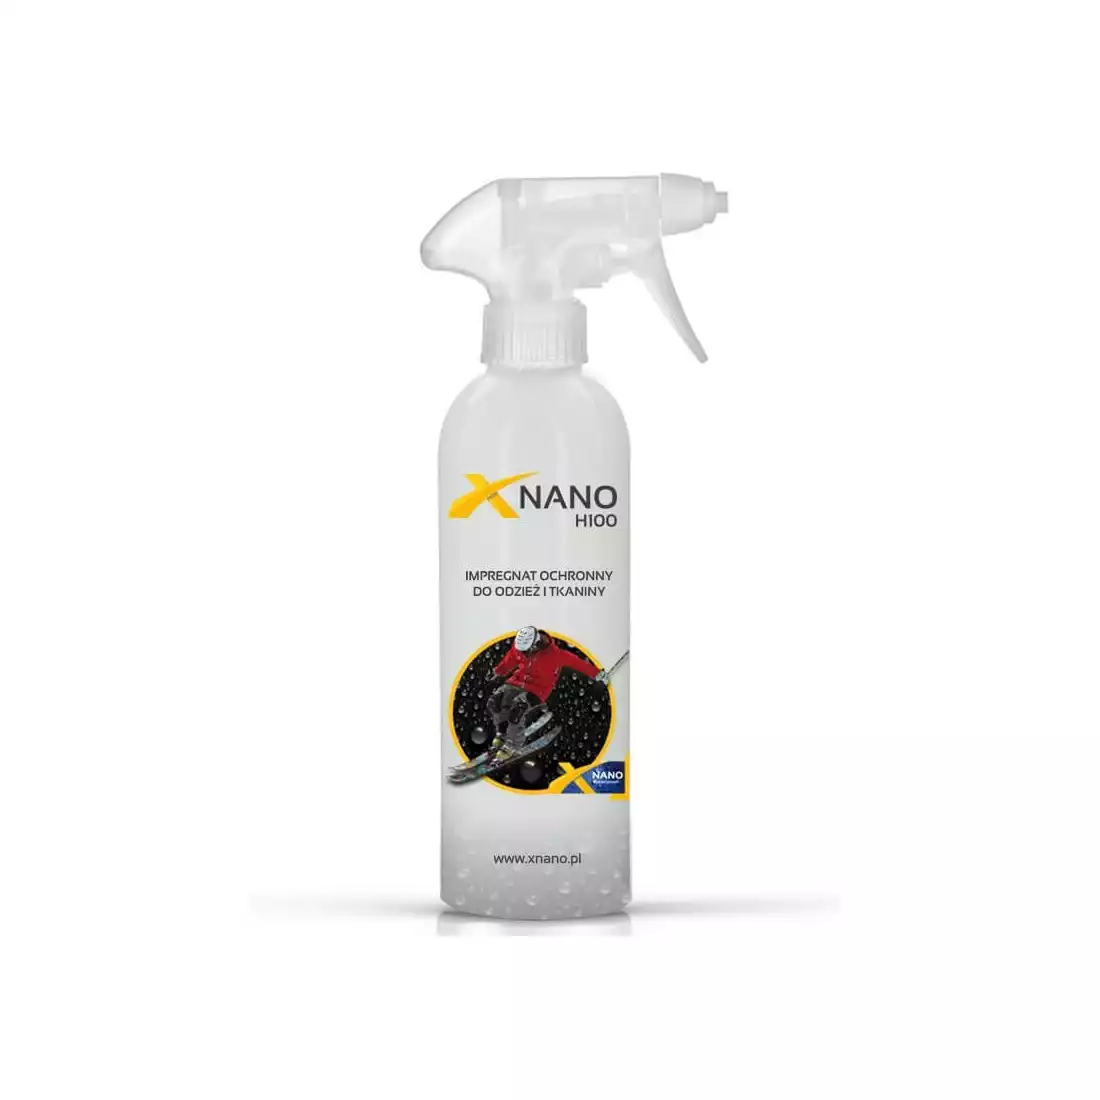 NANOBIZ - XNANO - H100 Impregnat ochronny do odzieży i tkanin poj.250 ml